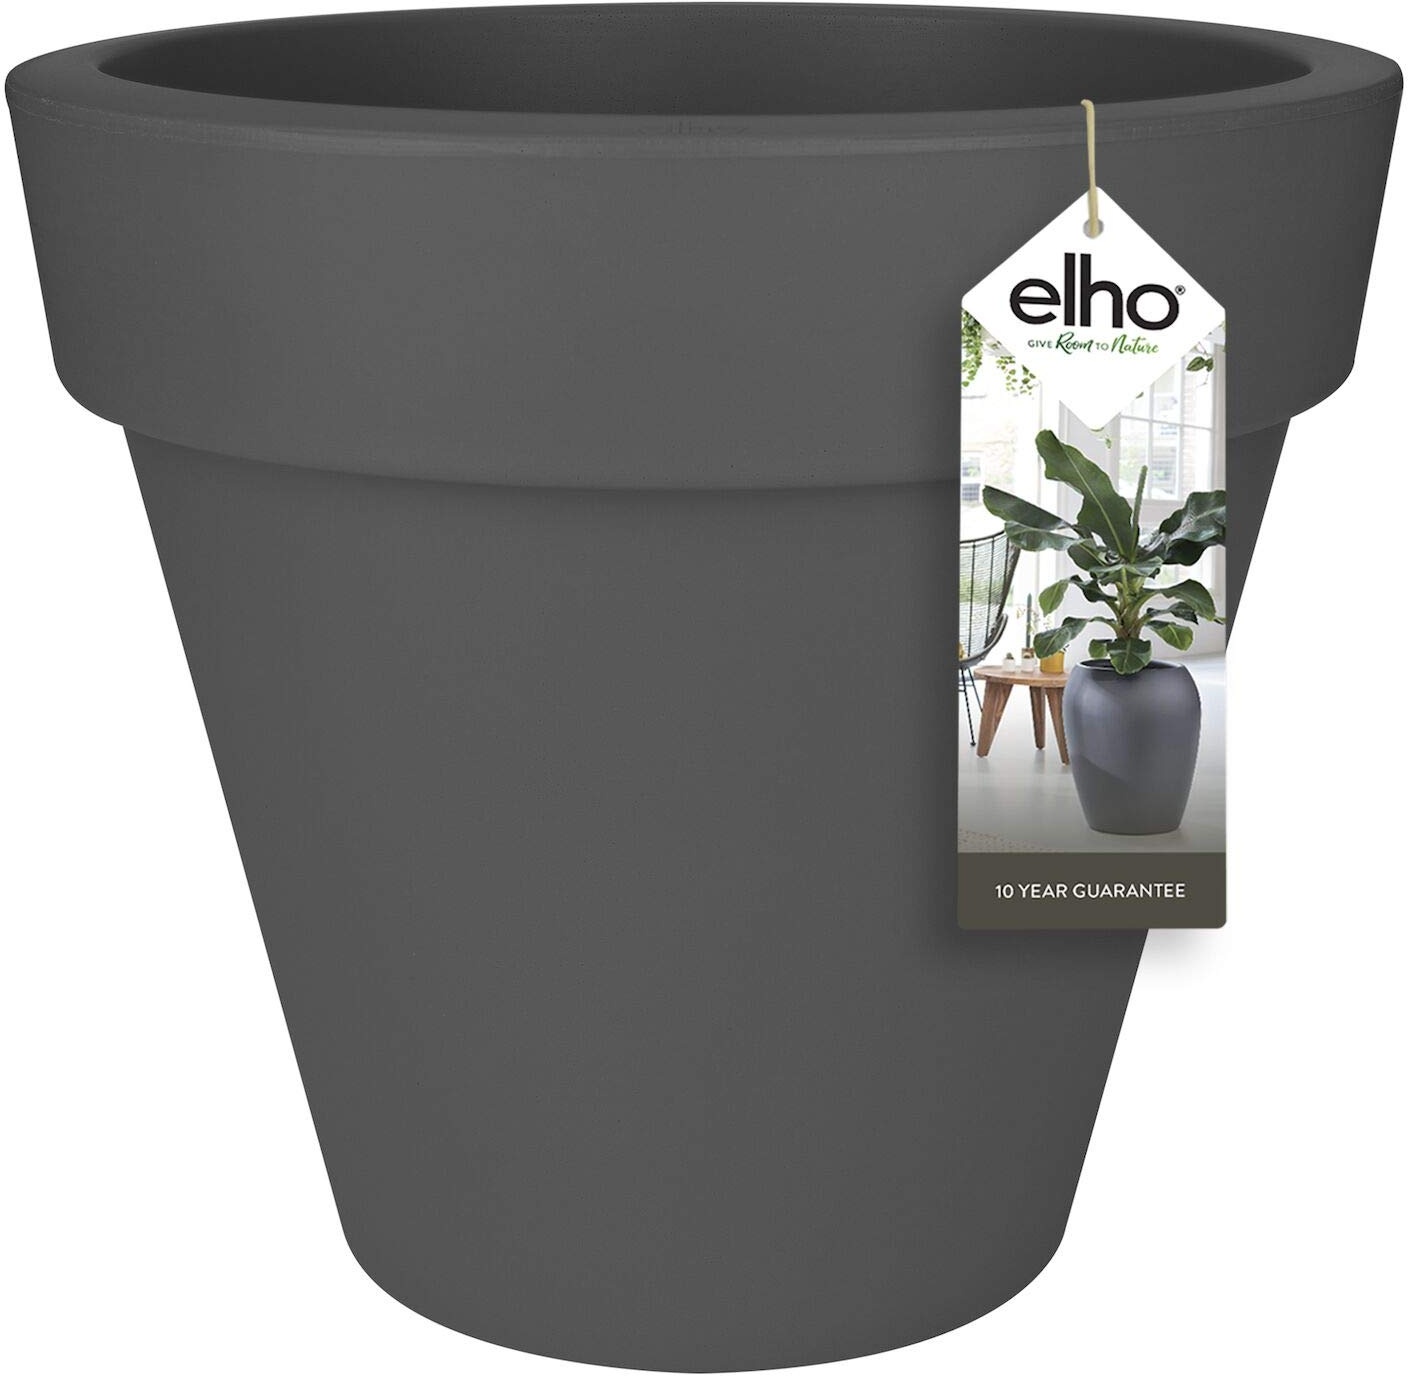 elho Pure Round 40 - Blumentopf für Innen & Außen - Ø 39.0 x H 35.7 cm - Schwarz/Anthrazit